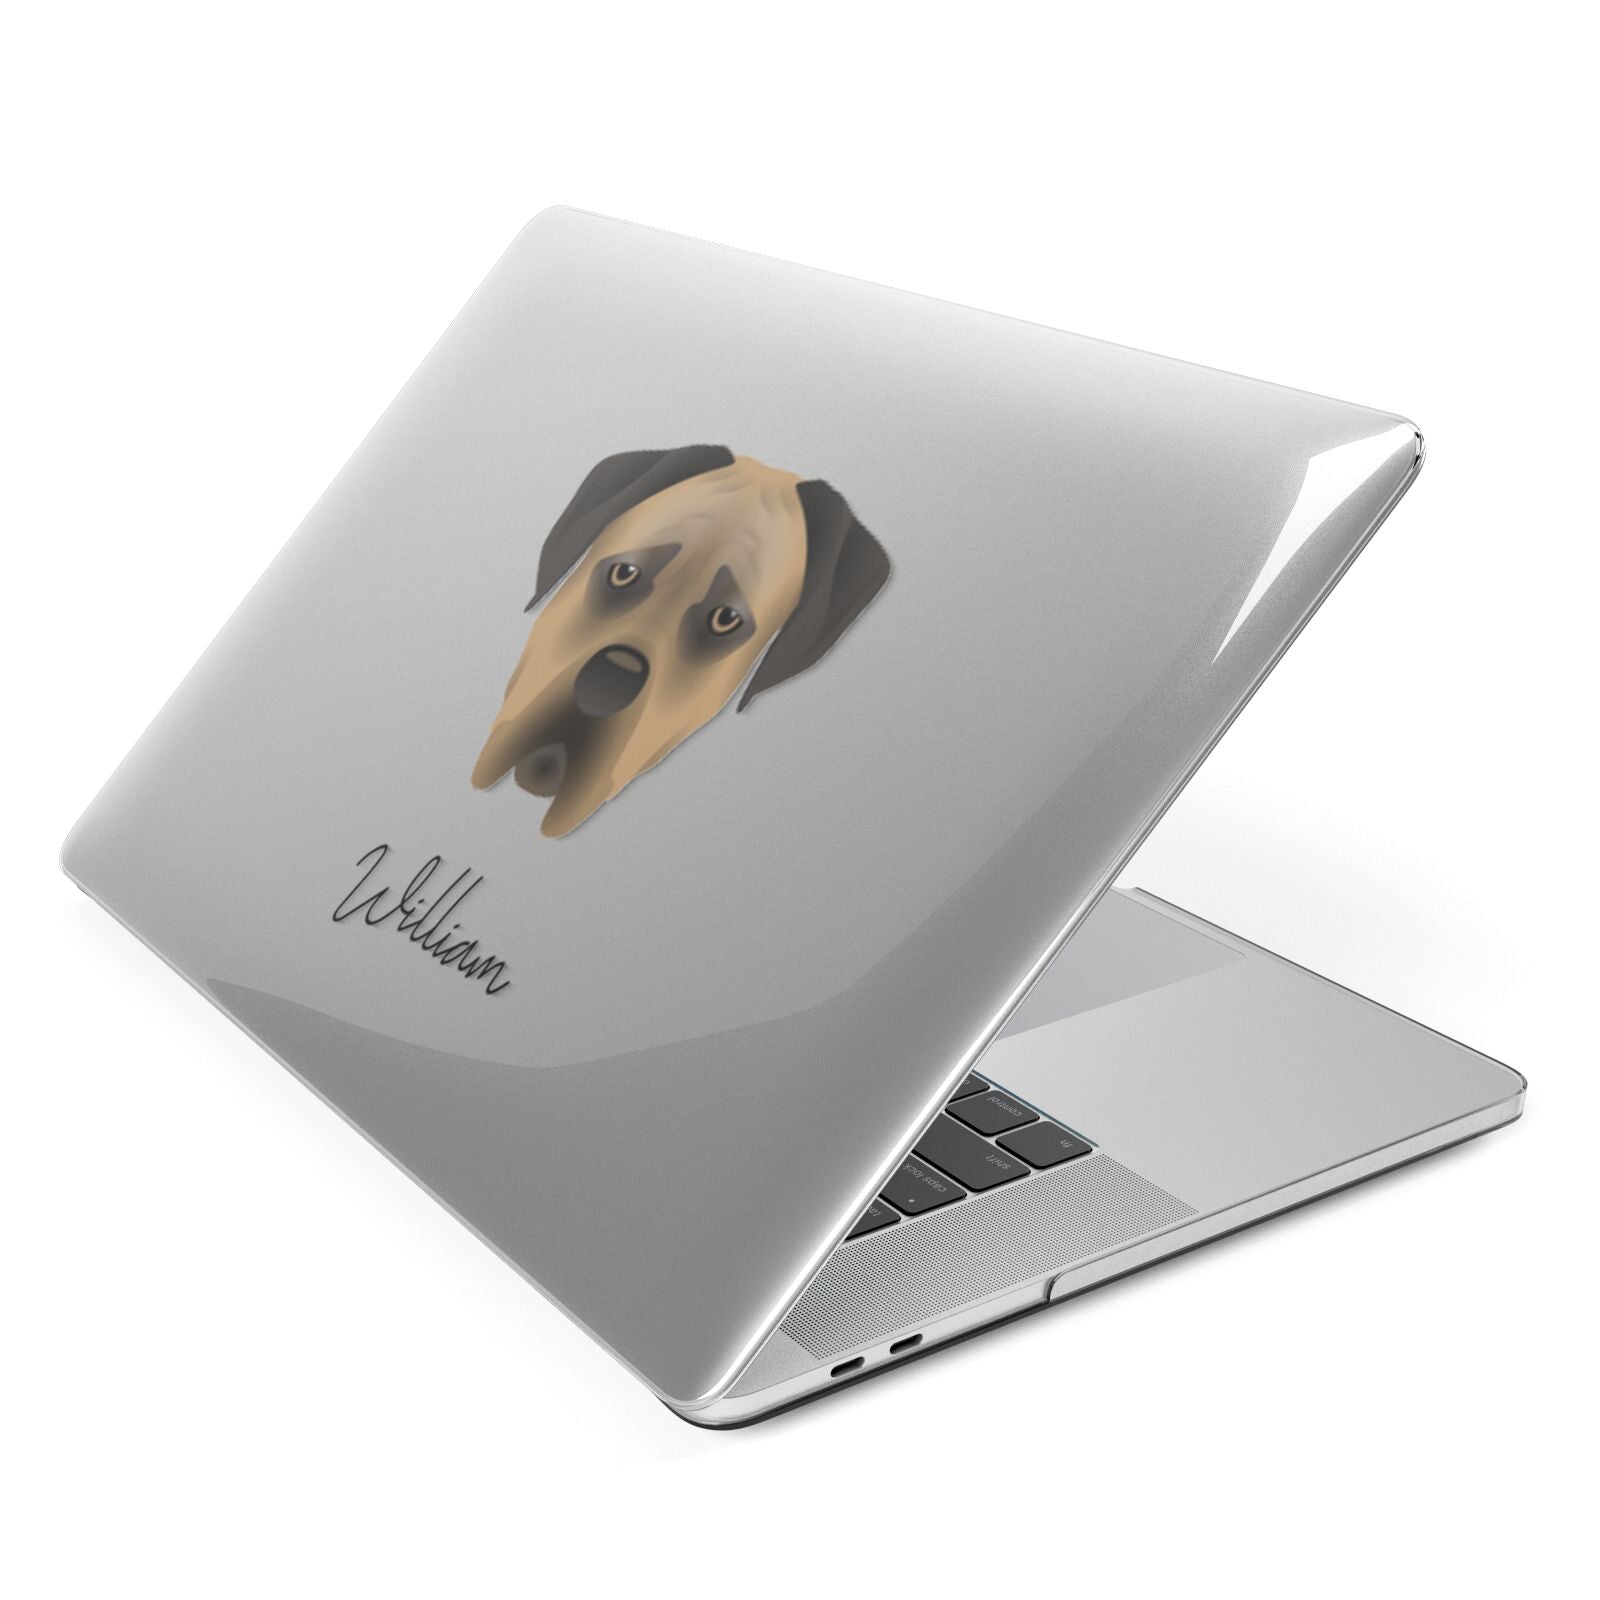 Boerboel Personalised Apple MacBook Case Side View